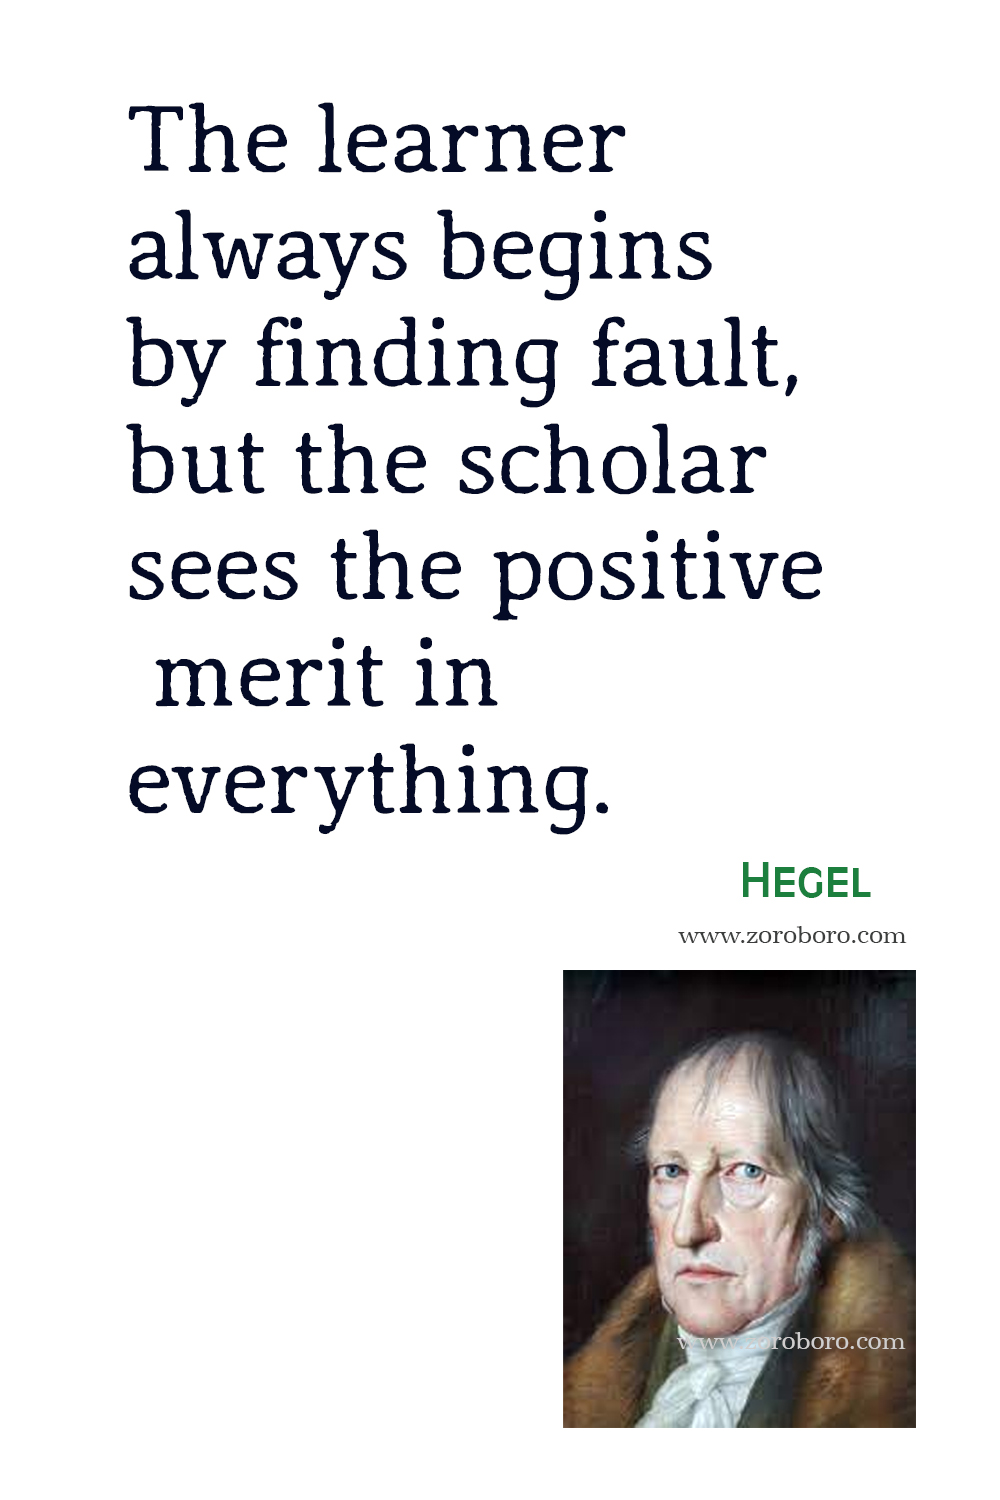 Georg Wilhelm Friedrich Hegel Quotes, Hegel Philosophy, Hegel Books Quotes, Hegel Theory, Hegel Quotes, Hegel Writing, Georg Wilhelm Friedrich Hegel